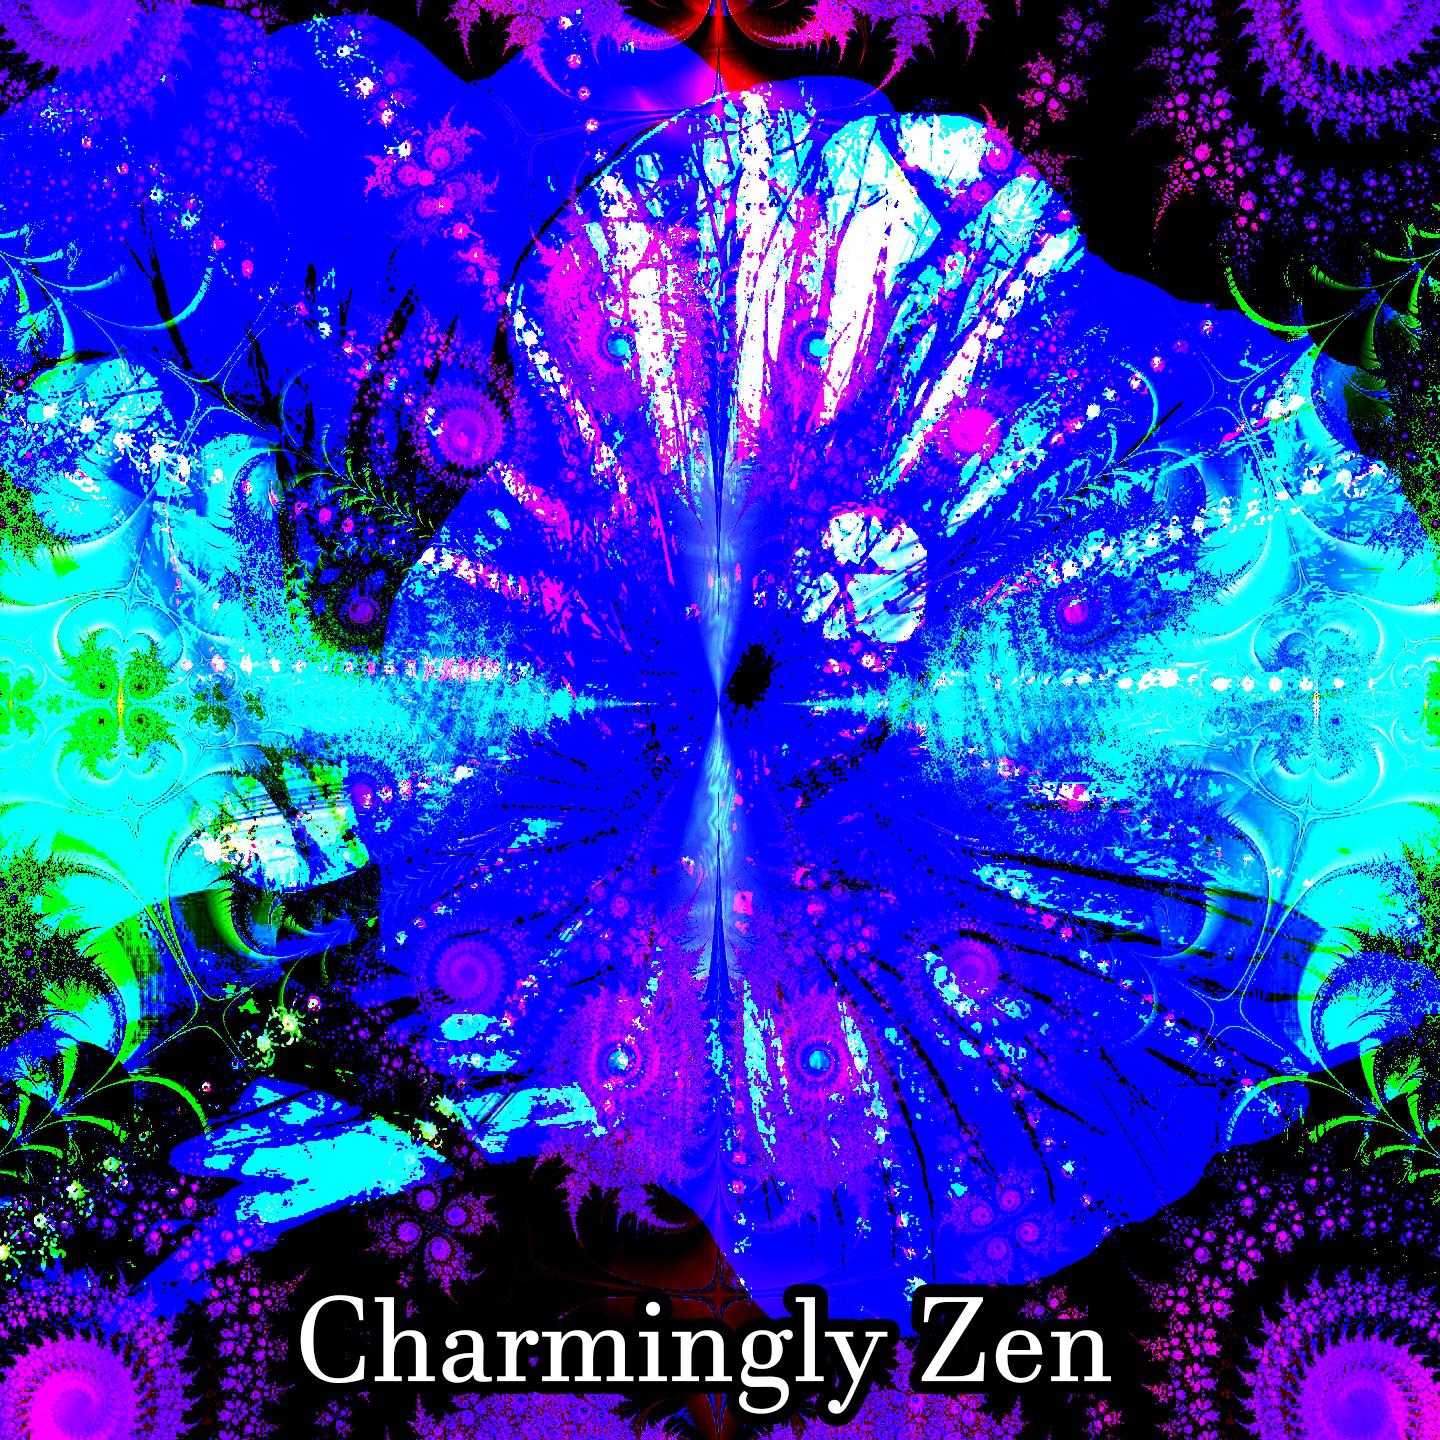 Charmingly Zen